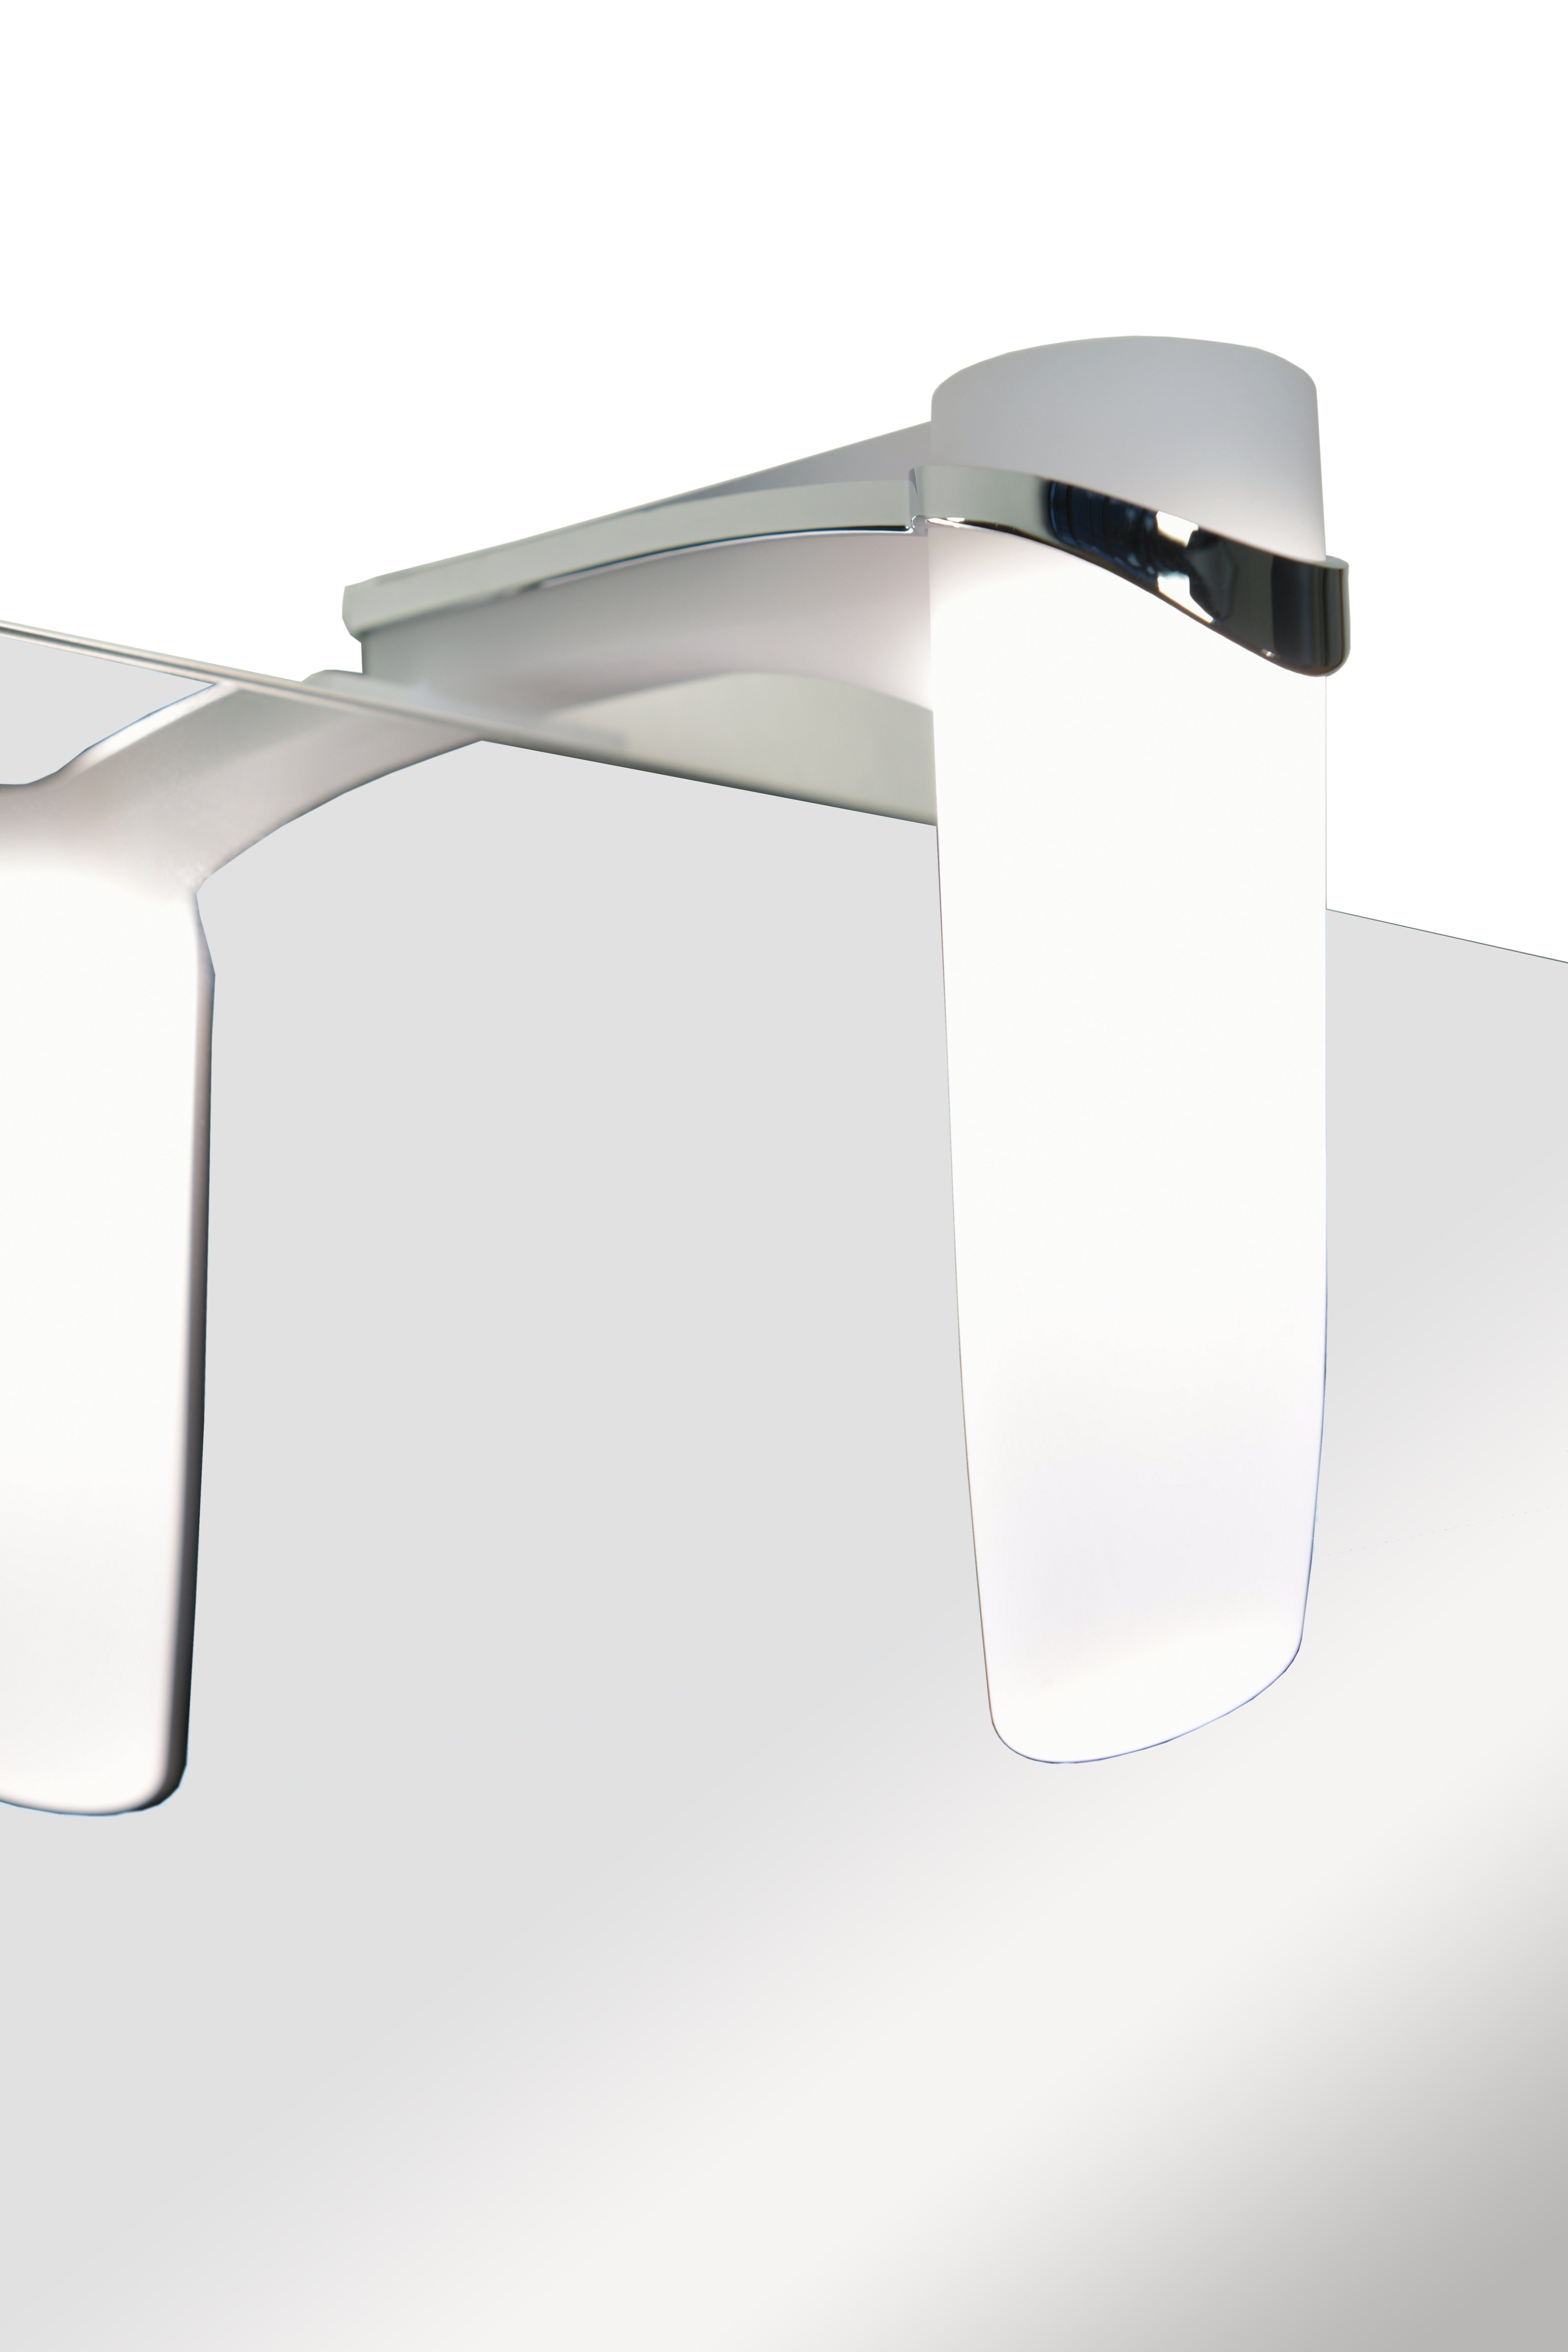 Badmöbel-Set LED-Beleuchtung für Spiegel perfekt & Eiche Unterschrank Badmöbel-Set Waschbecken, Waschtisch-Set 3-teilig FRESH badselekt mit das inkl. Gästebad hell,